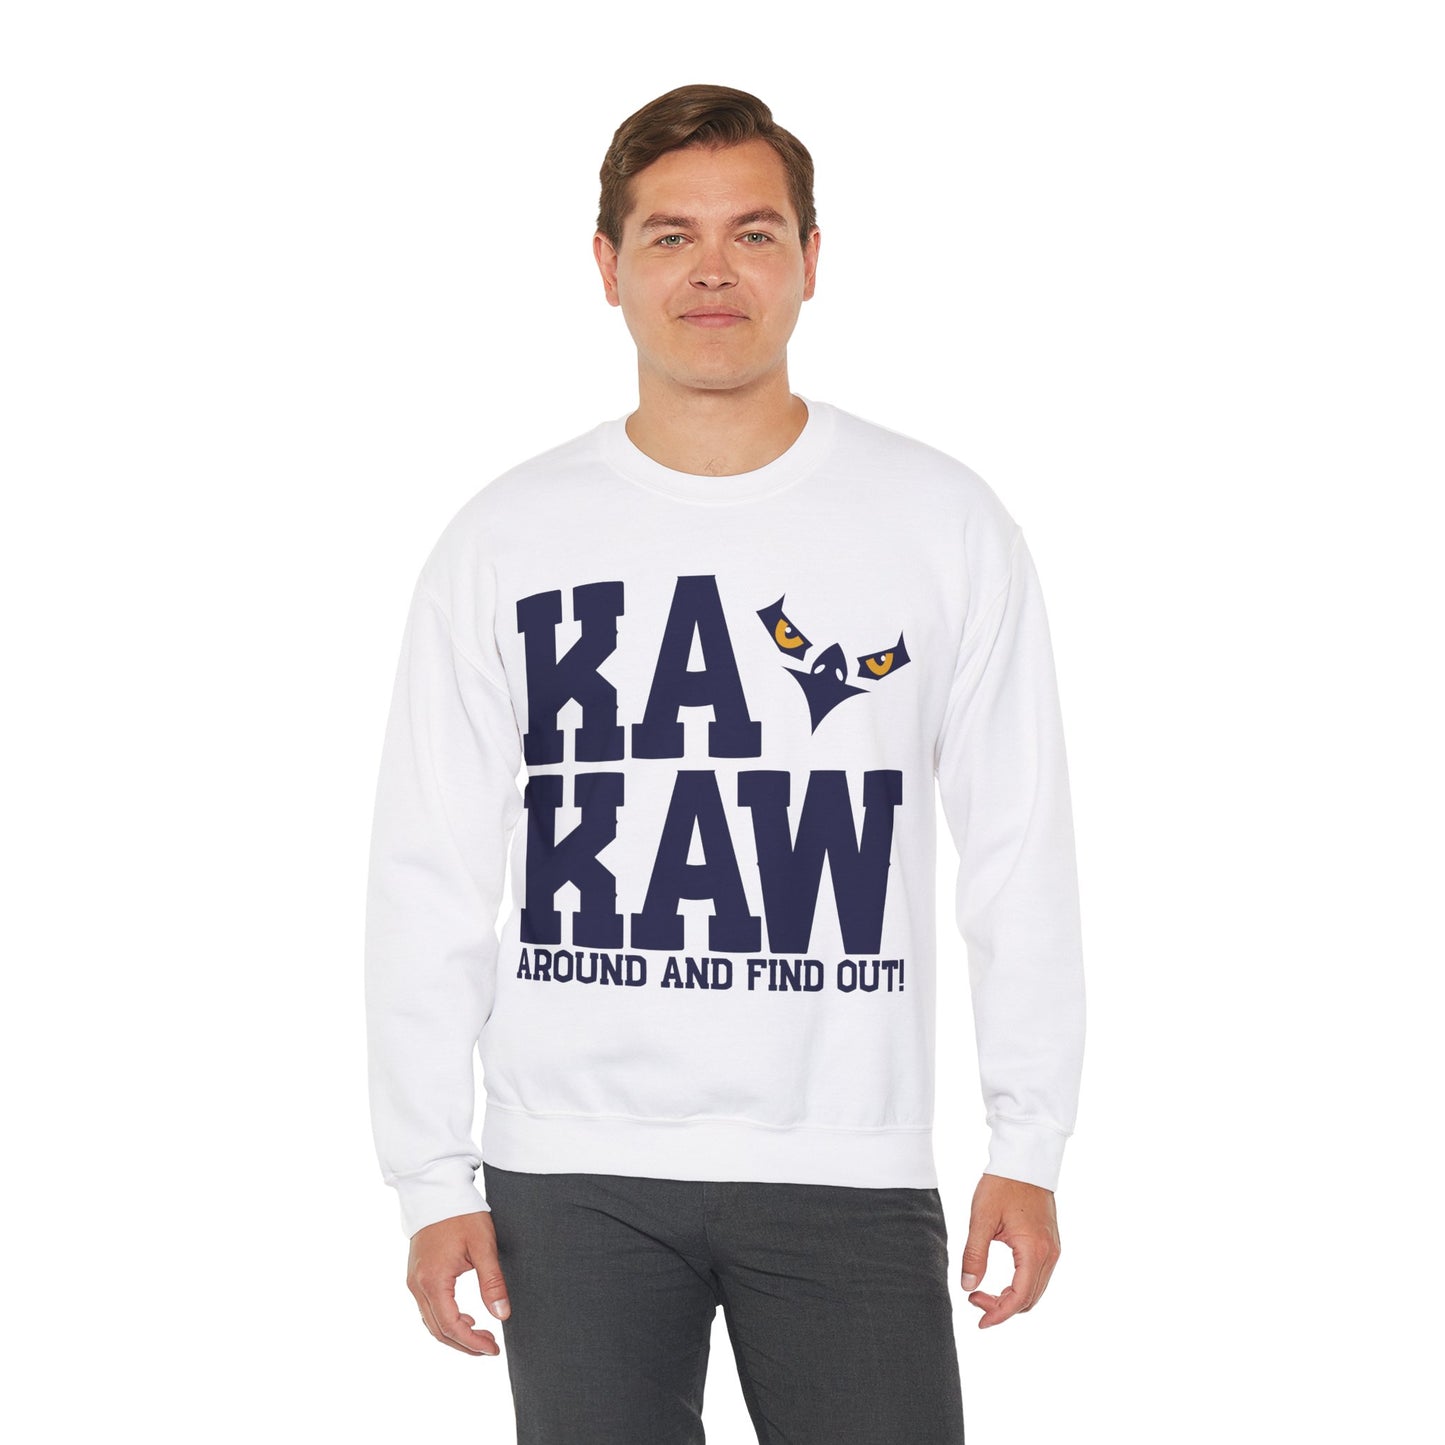 Battlehawks Crewneck Sweatshirt KAKAW Around and Find Out